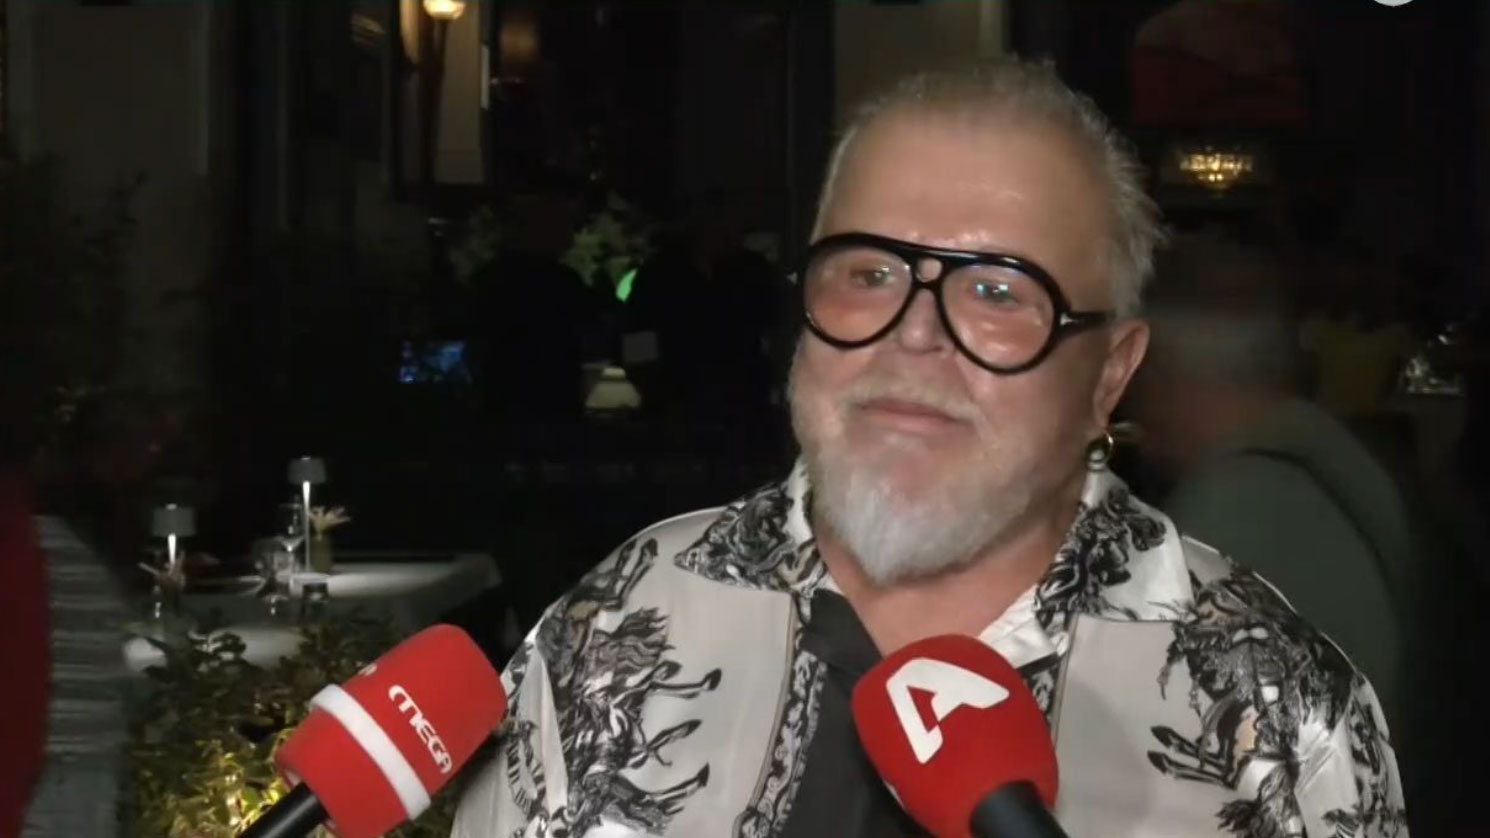 Νίκος Αποστολόπουλος: Απορώ που οι υπόλοιποι εκπλήσσονται που η Ηλιάνα Παπαγεωργίου θα είναι στο Shopping Star